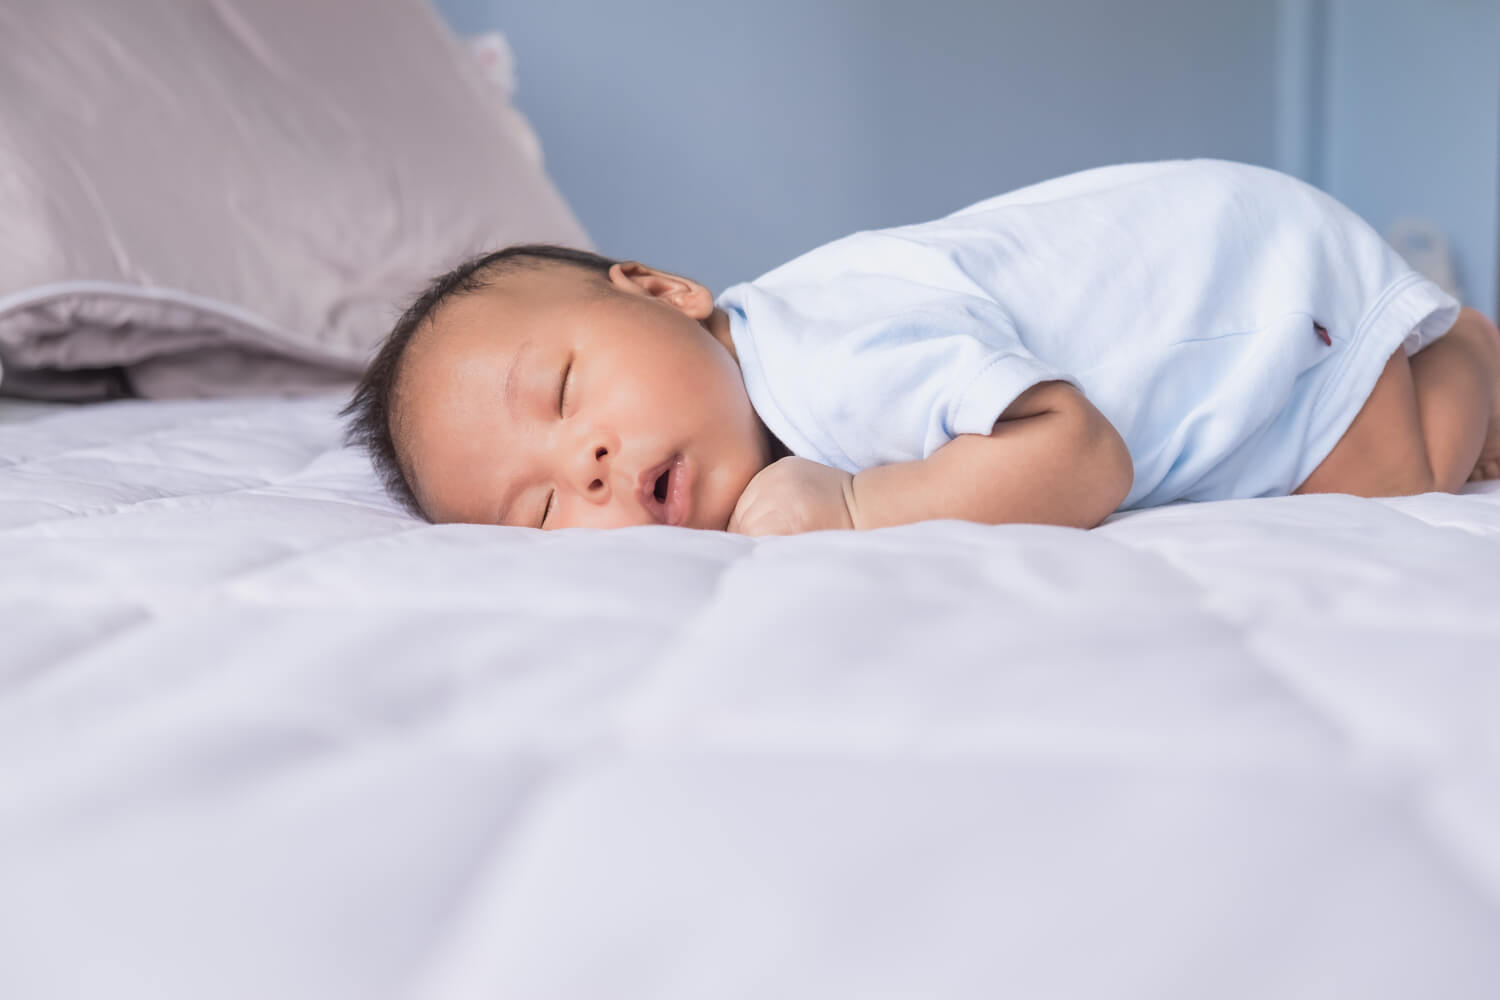 baby with sleep apnea sleeing